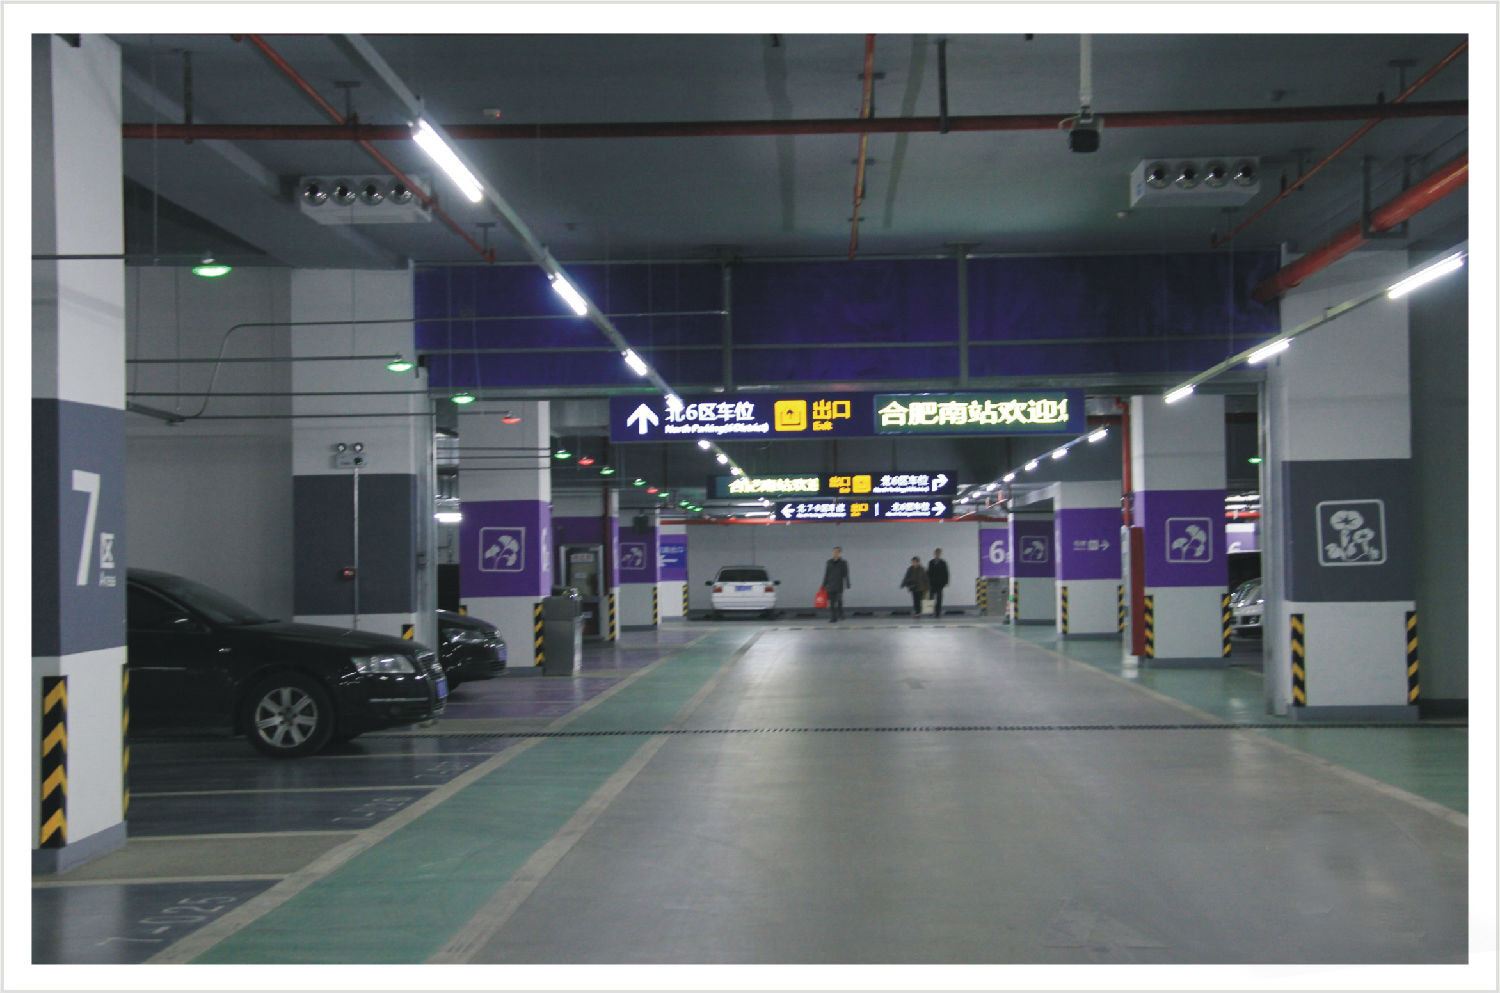 合肥南站停车费是上海虹桥站3倍 回应:缓解停